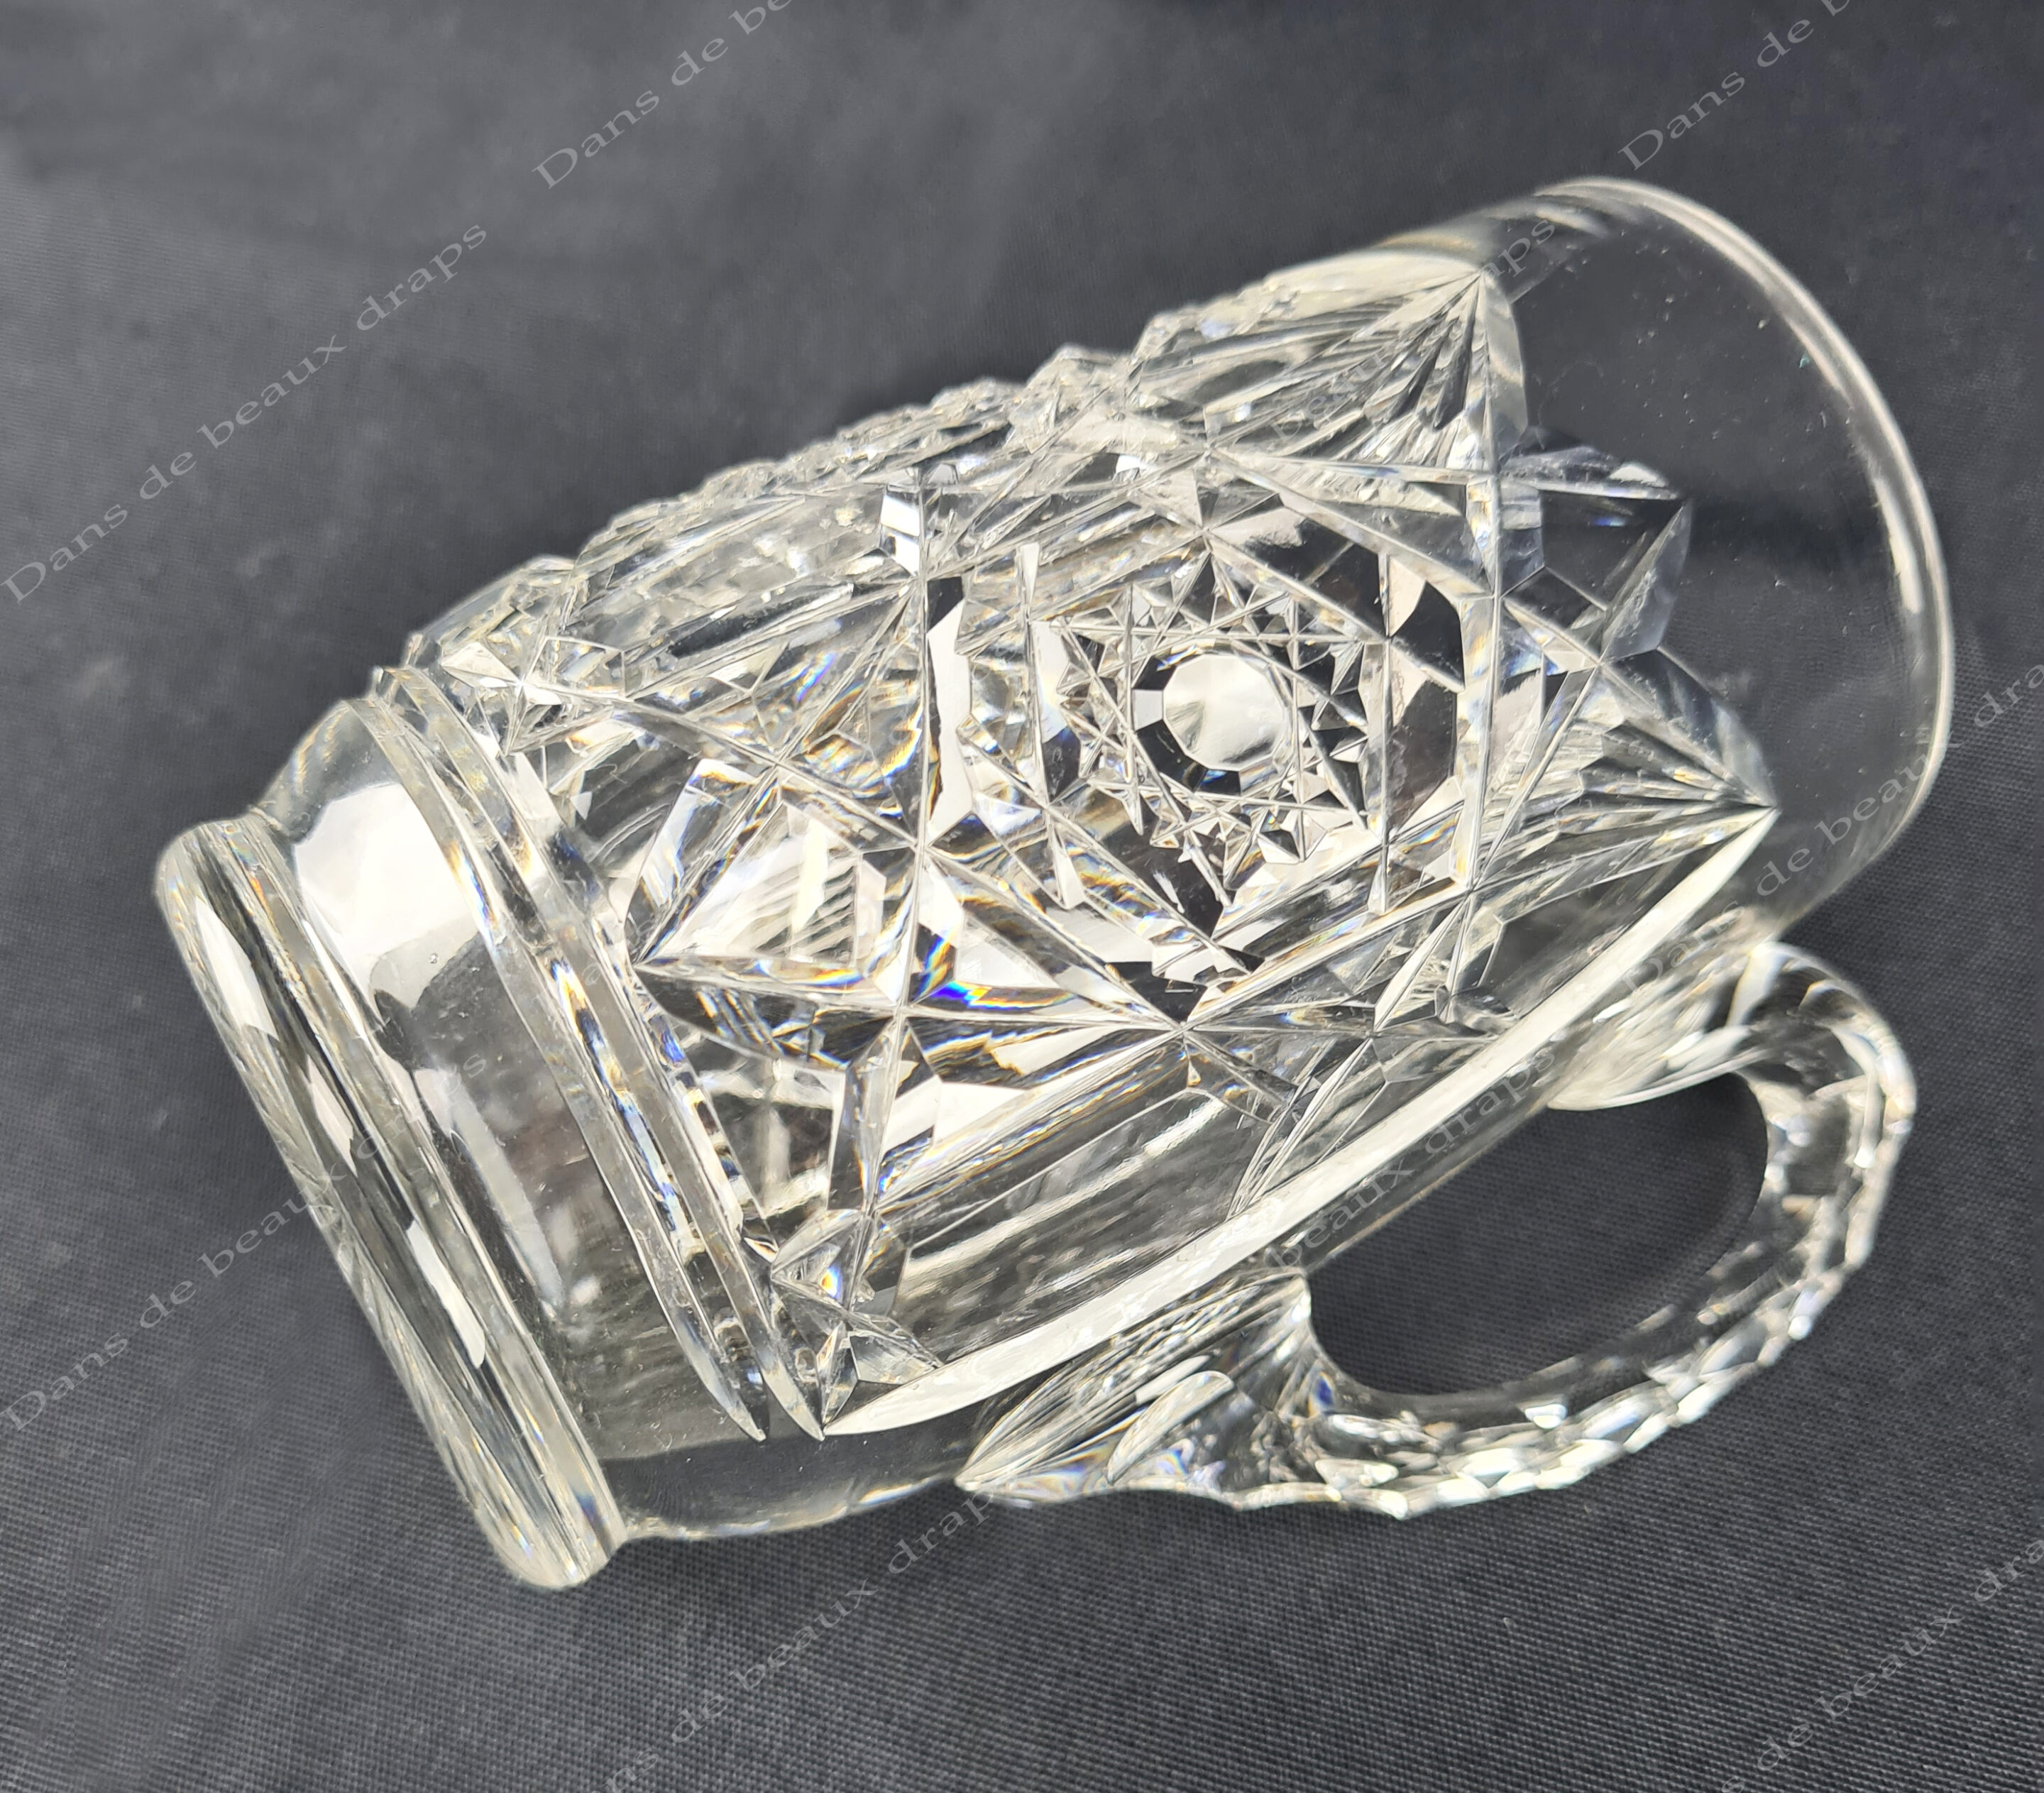 Magnifique service de verres en cristal de Baccarat modèle Lagny, 63  pièces. - Dans de beaux draps